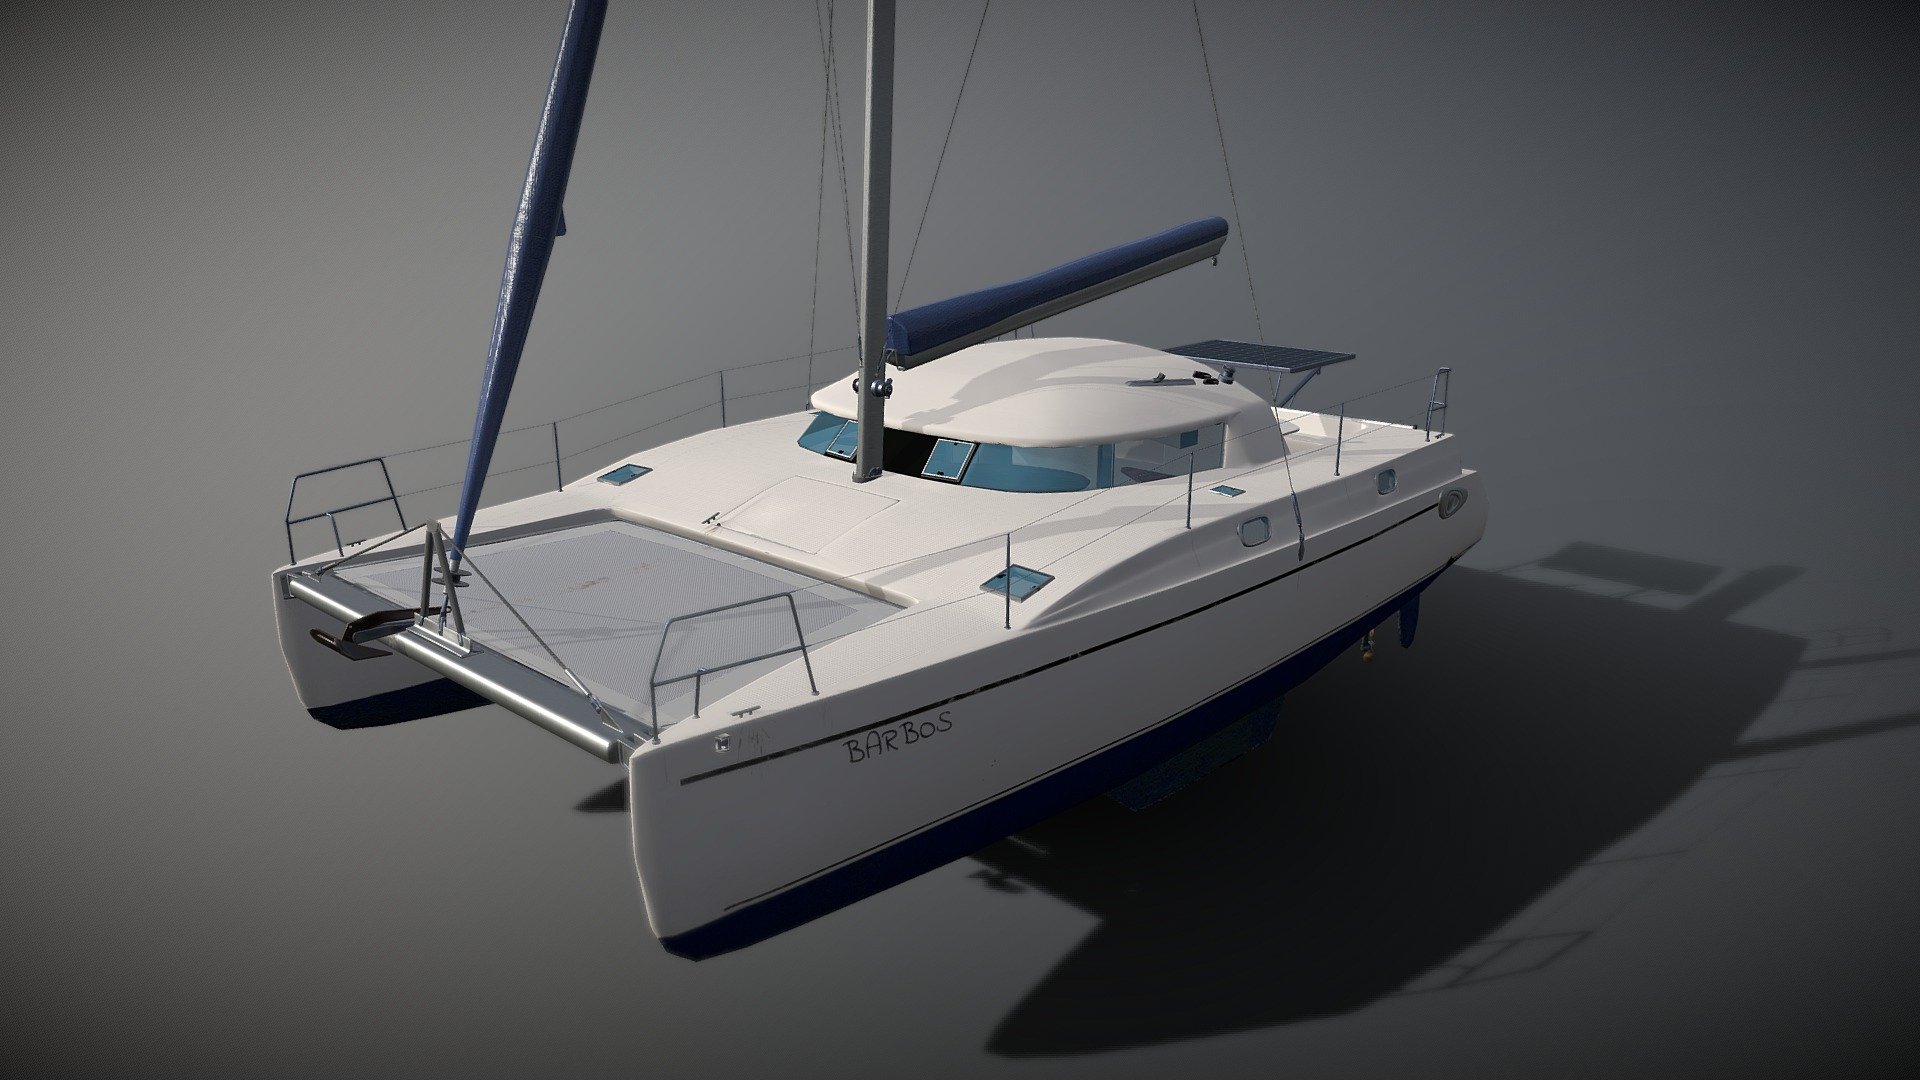 WIP
Sailing catamaran 35ft, model for upcoming sailing simulator, work in progress - FP35 "BARBOS" - 3D model by nefirma 3d model